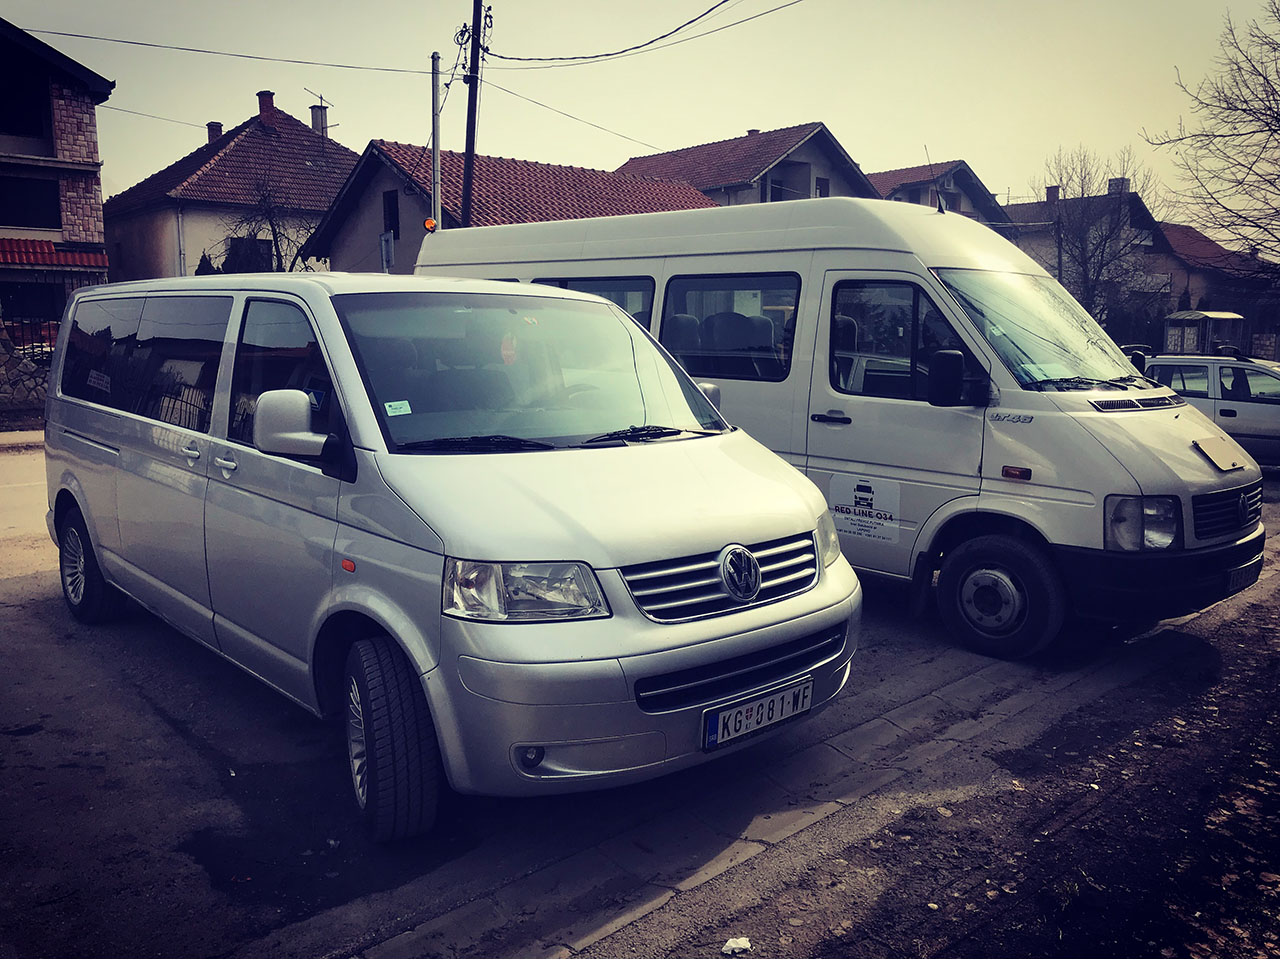 Slika 1 - KOMBI PREVOZ RED LINE 034 - Autobuski i kombi prevoz, Kragujevac